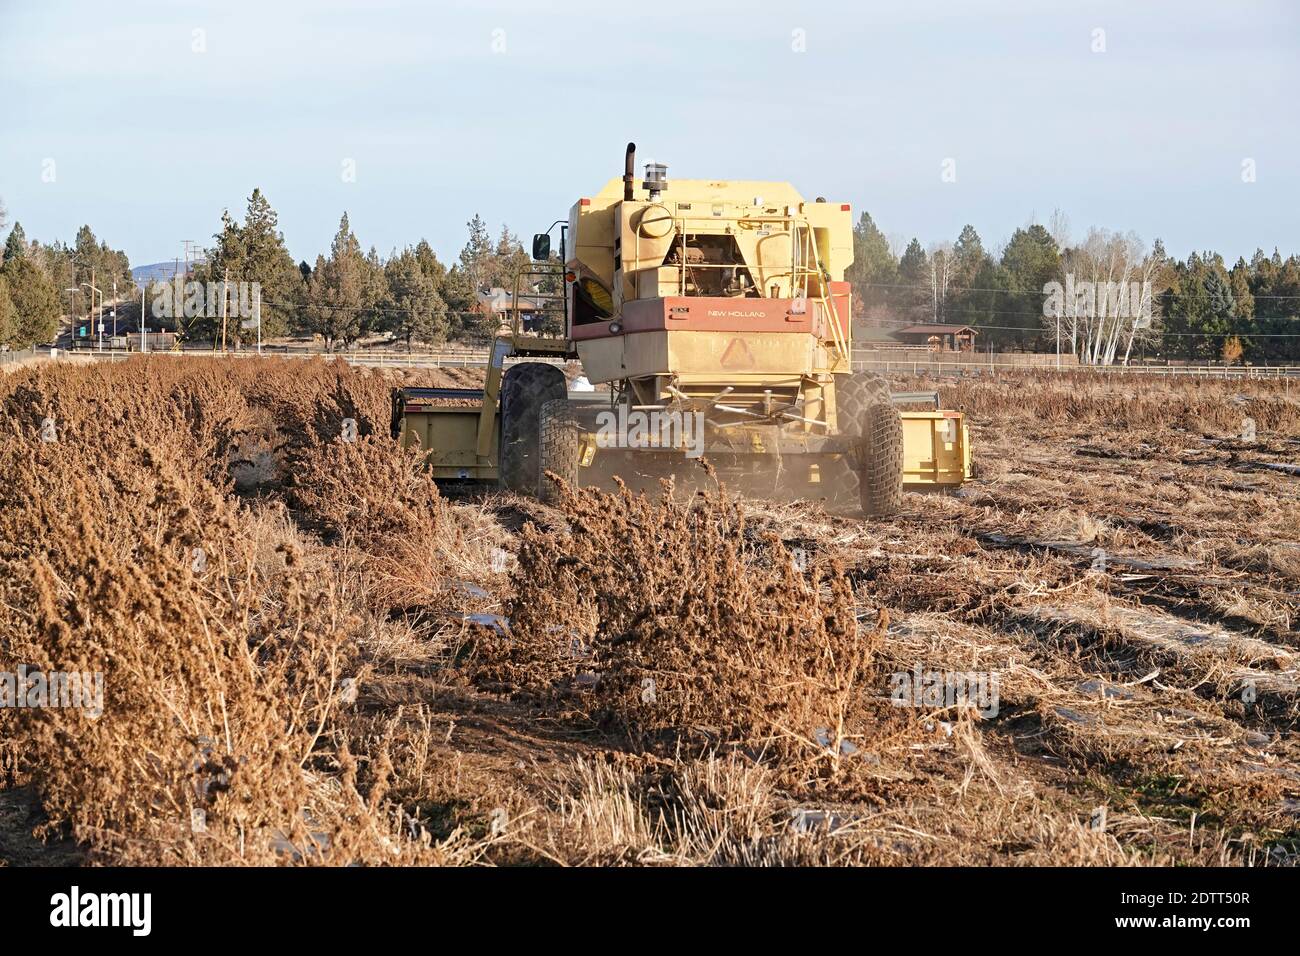 Un agriculteur de Tumalo, en Oregon, utilise une grande moissonneuse-batteuse pour récolter un champ de chanvre industriel. Le chanvre est devenu l'une des principales cultures de trésorerie de l'État. Banque D'Images